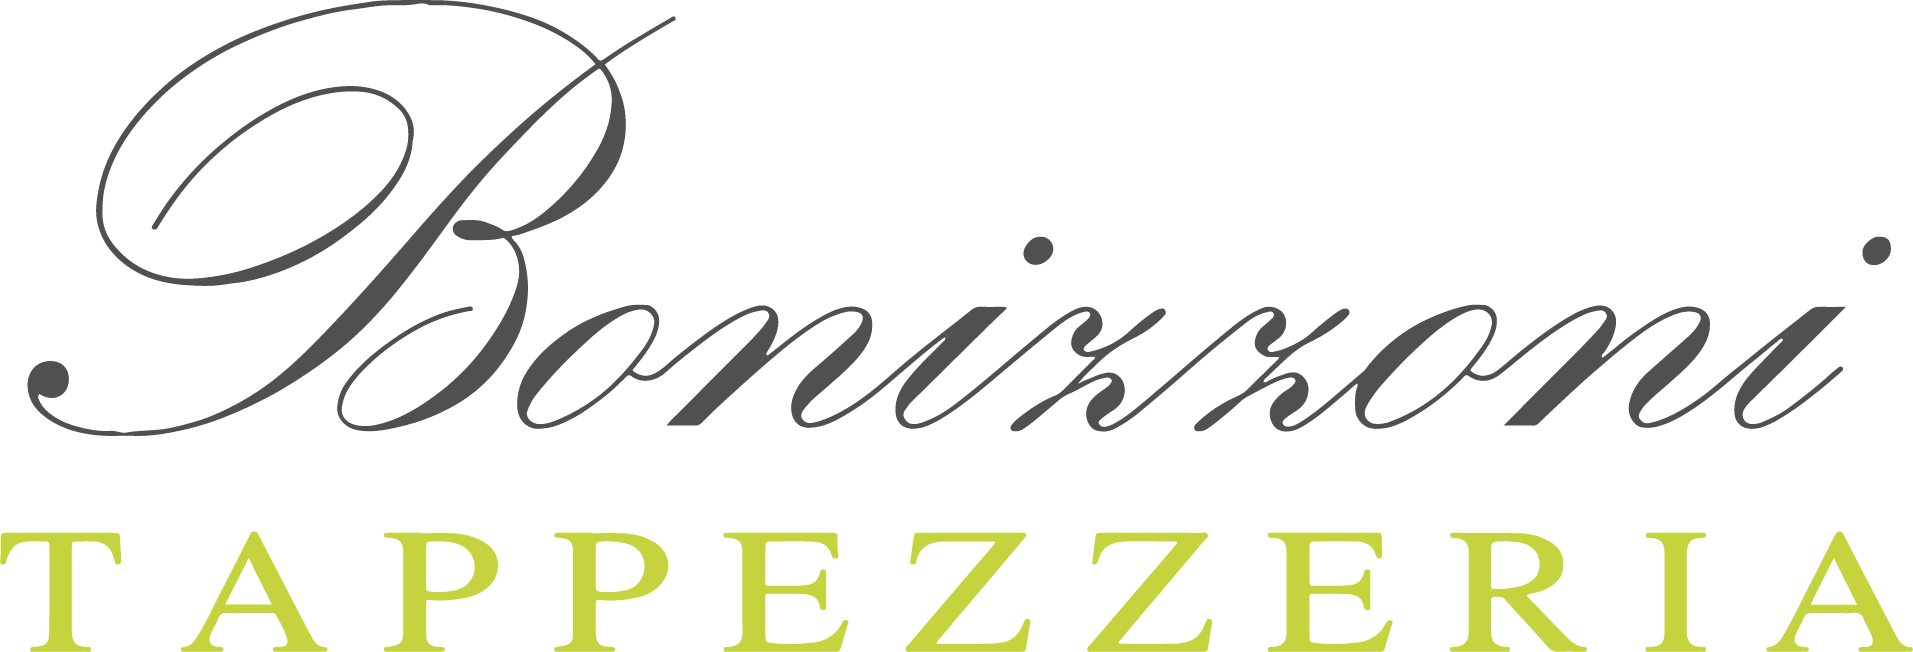 Bonizzoni Tappezzeria